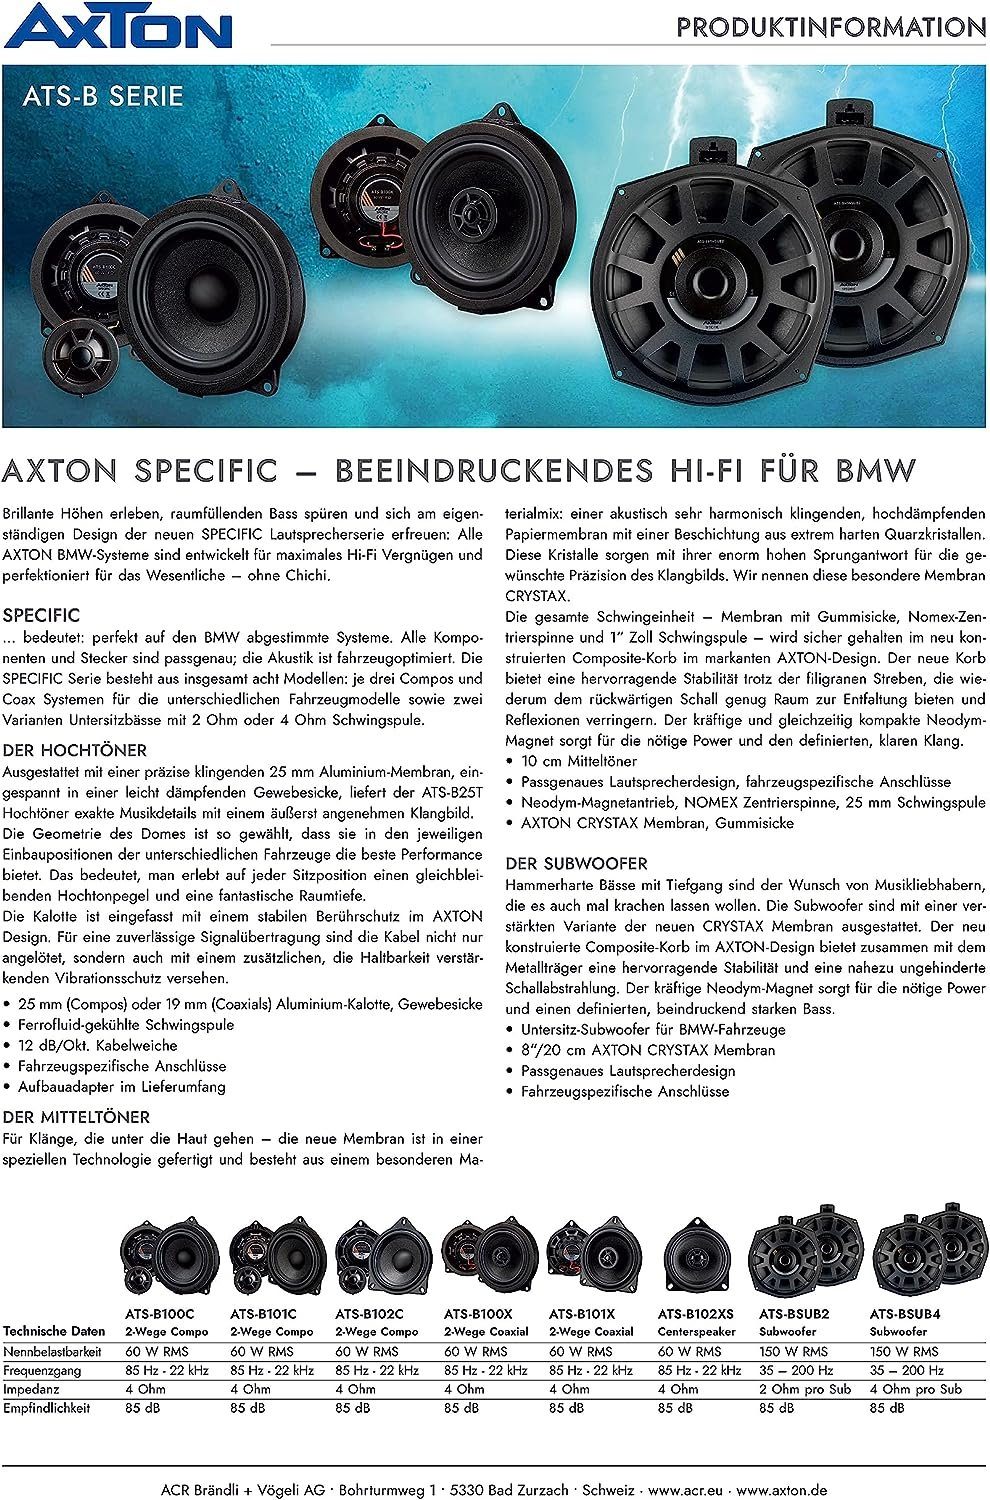 BMW ATS-B100C Axton für 2-Wege-Lautsprecher Auto-Lautsprecher Axton